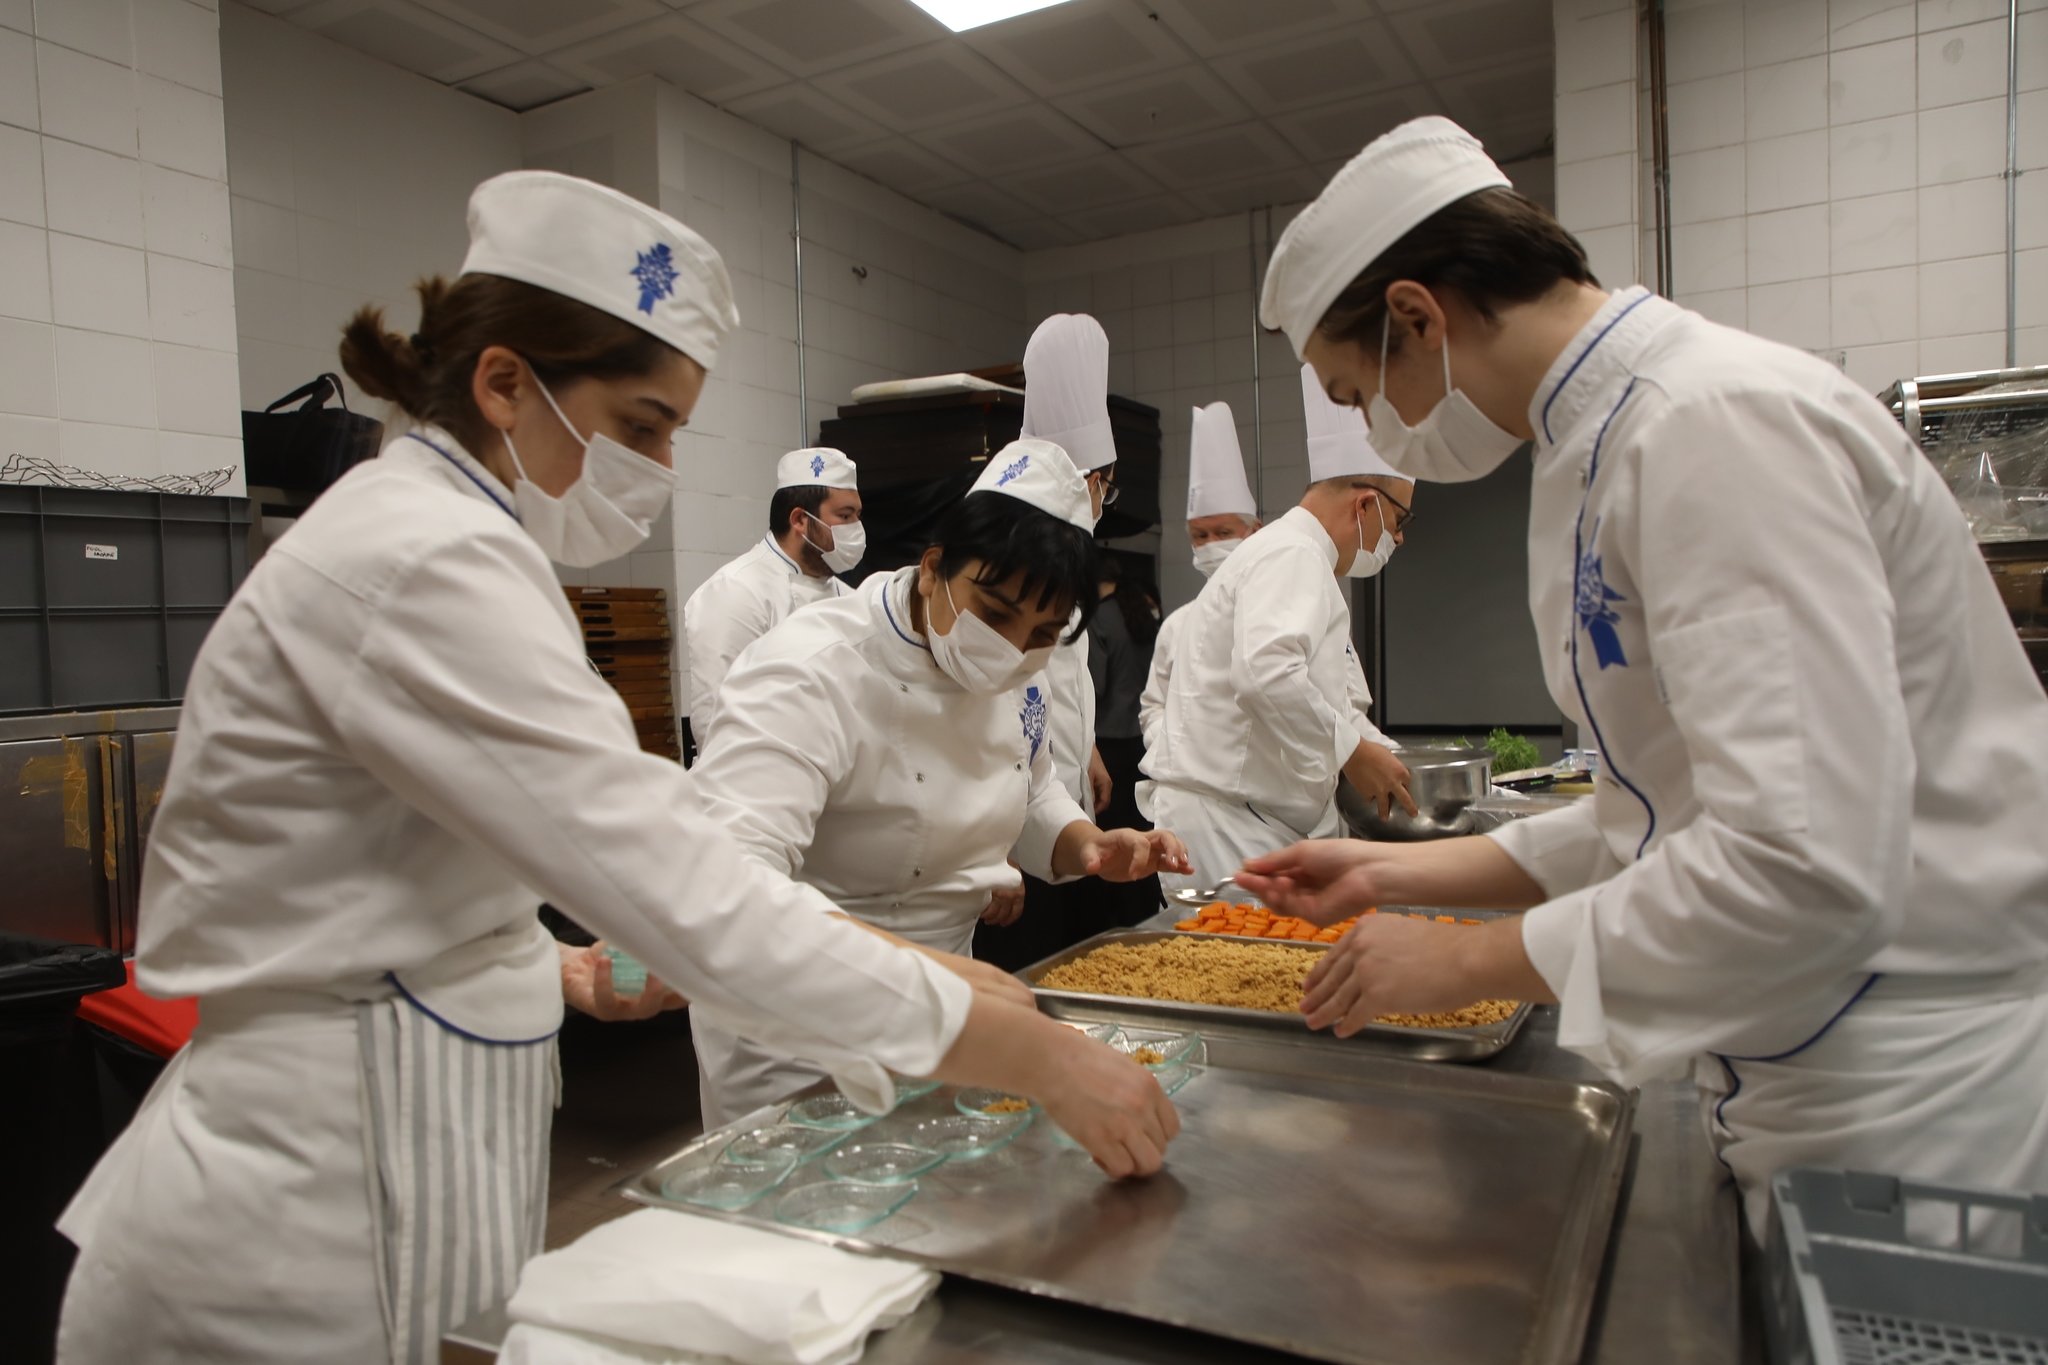 Le Cordon Bleu İstanbul 10. Yılını Türk Mutfağı Eğitimi ile Taçlandırıyor